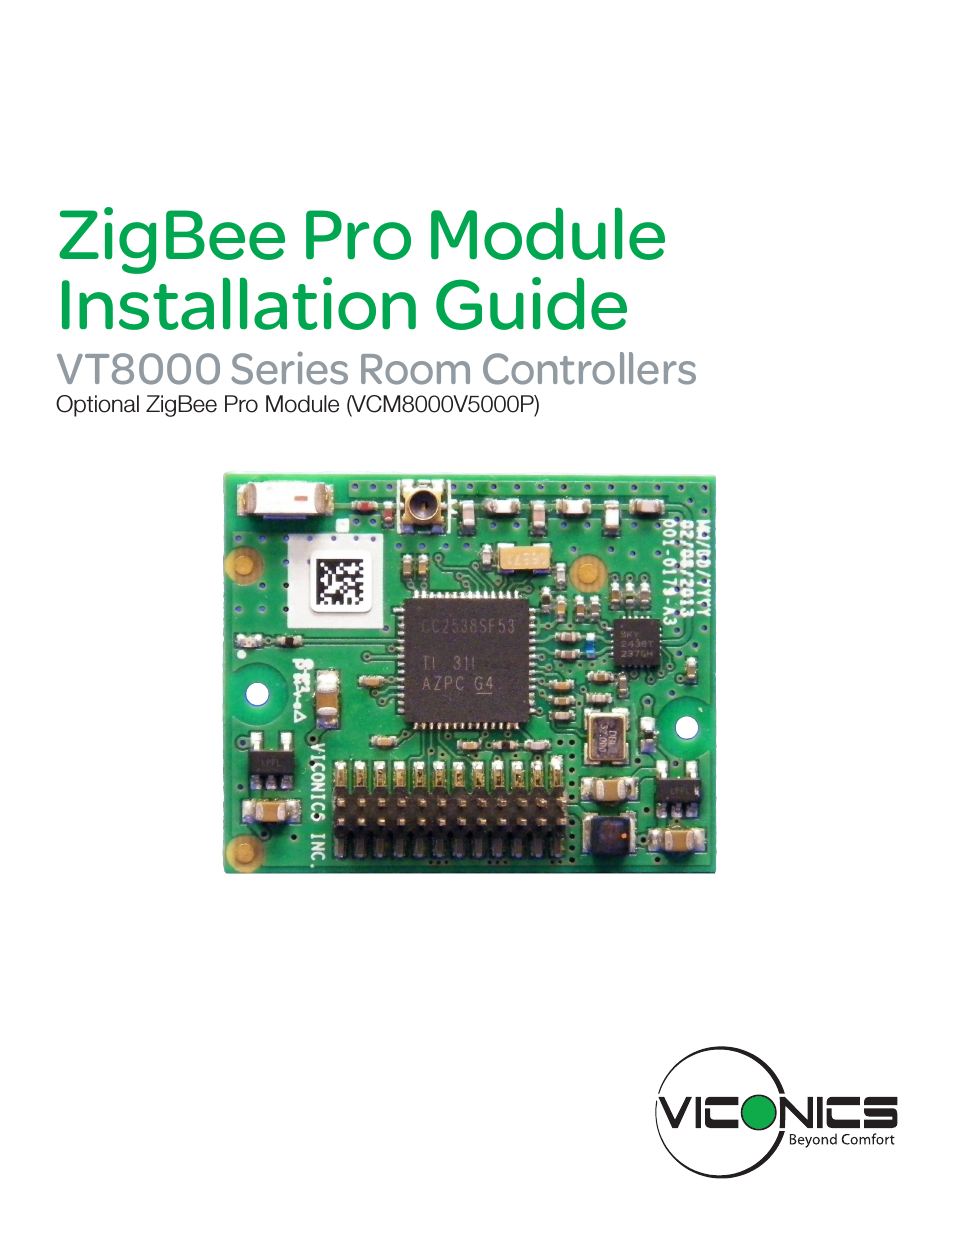 VCM8000V5045P (ZigBee Pro) Installation Guide for Zigbee Pro Module